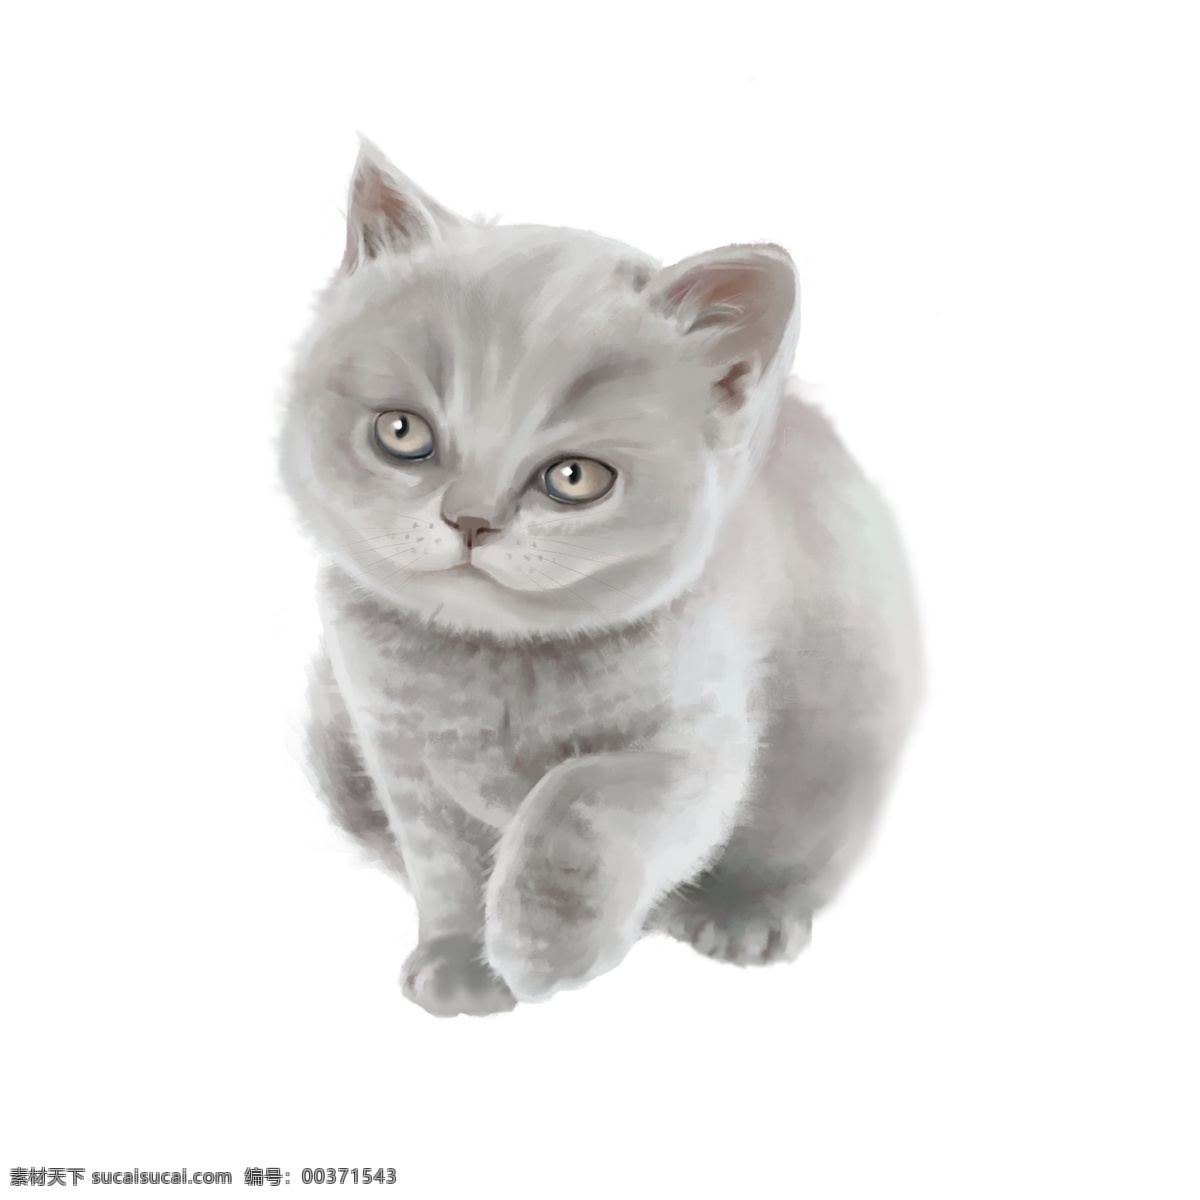 免 抠 手绘 商用 写实 厚 涂 动物 猫 小猫 可爱 免抠 可商用 厚涂